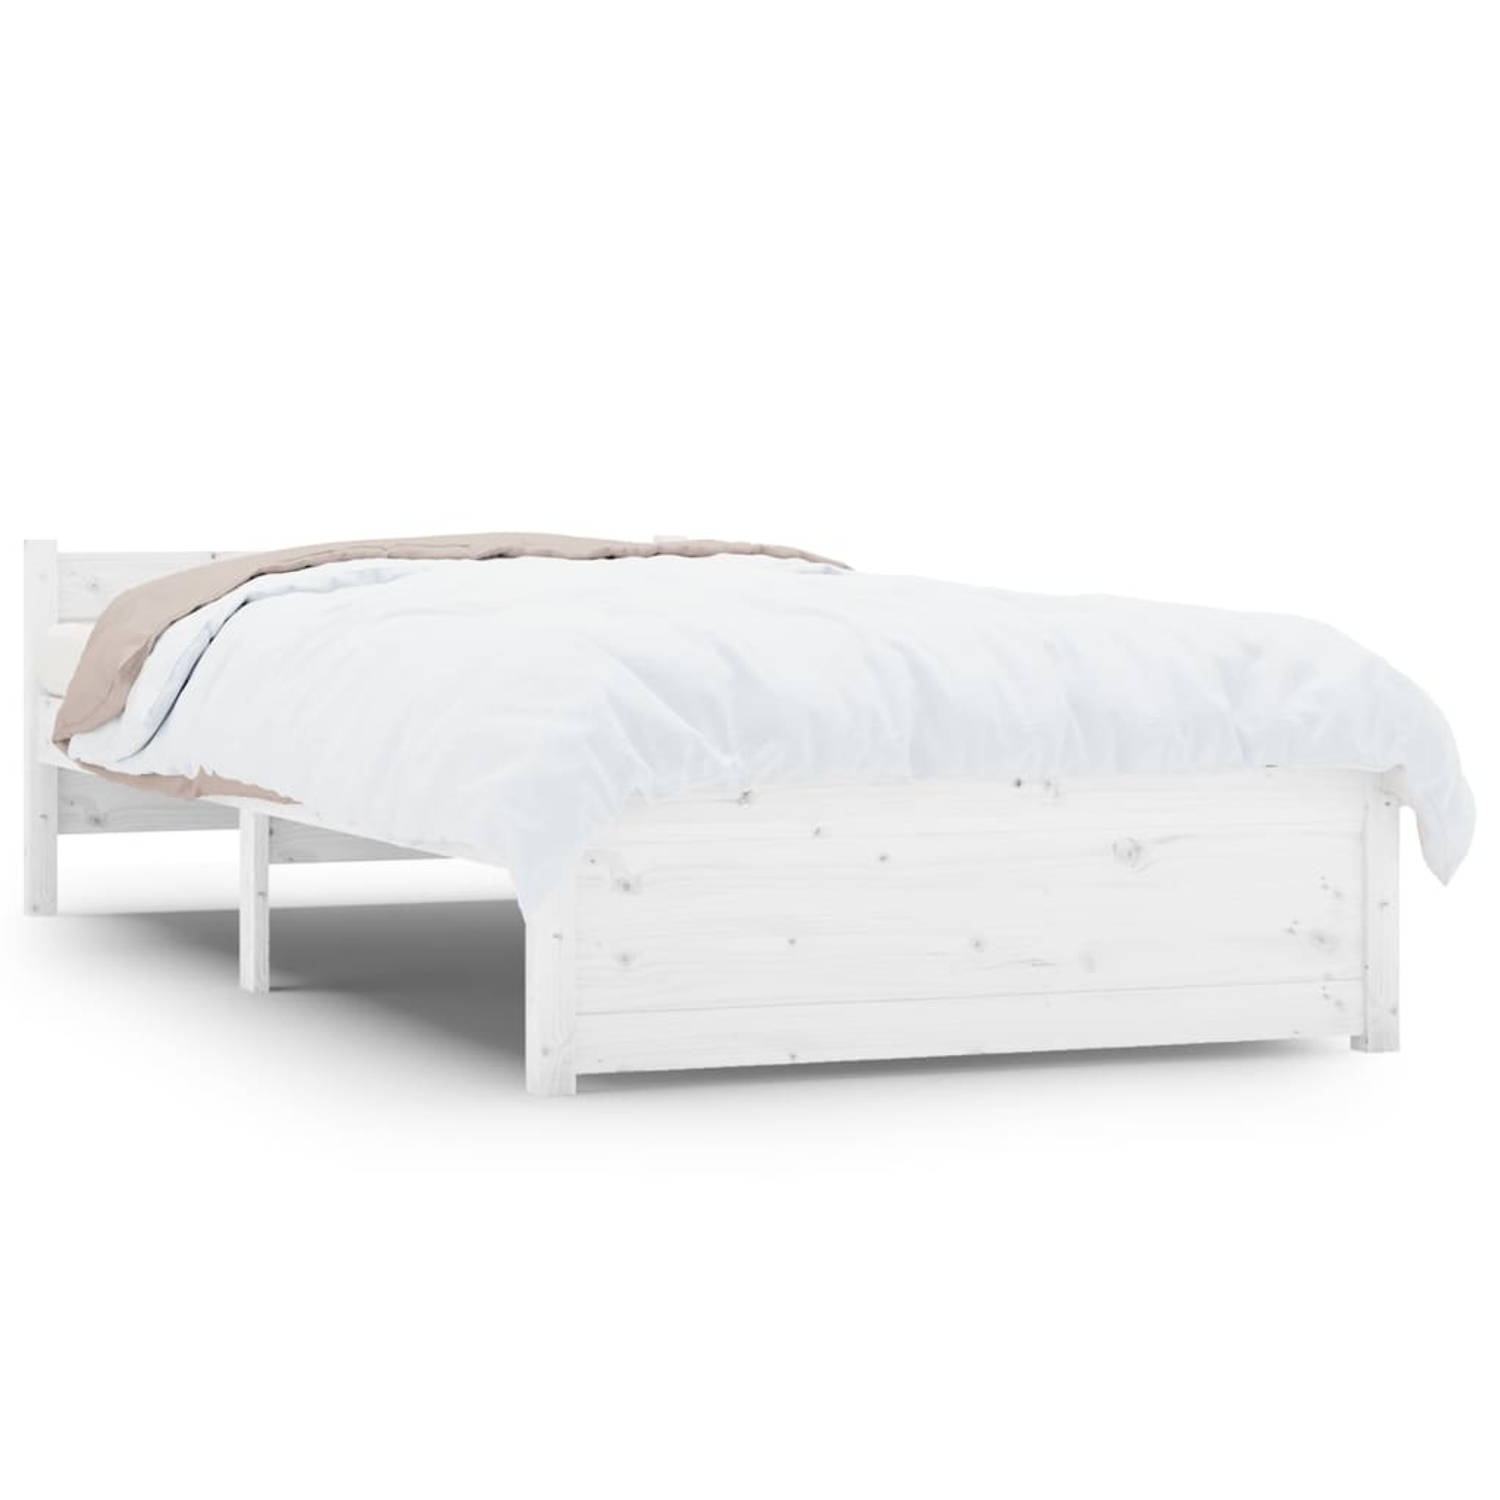 The Living Store Bedframe massief hout wit 100x200 cm - Bedframe - Bedframes - Bed - Bedbodem - Ledikant - Bed Frame - Massief Houten Bedframe - Slaapmeubel - Eenpersoonsbed - Bedd